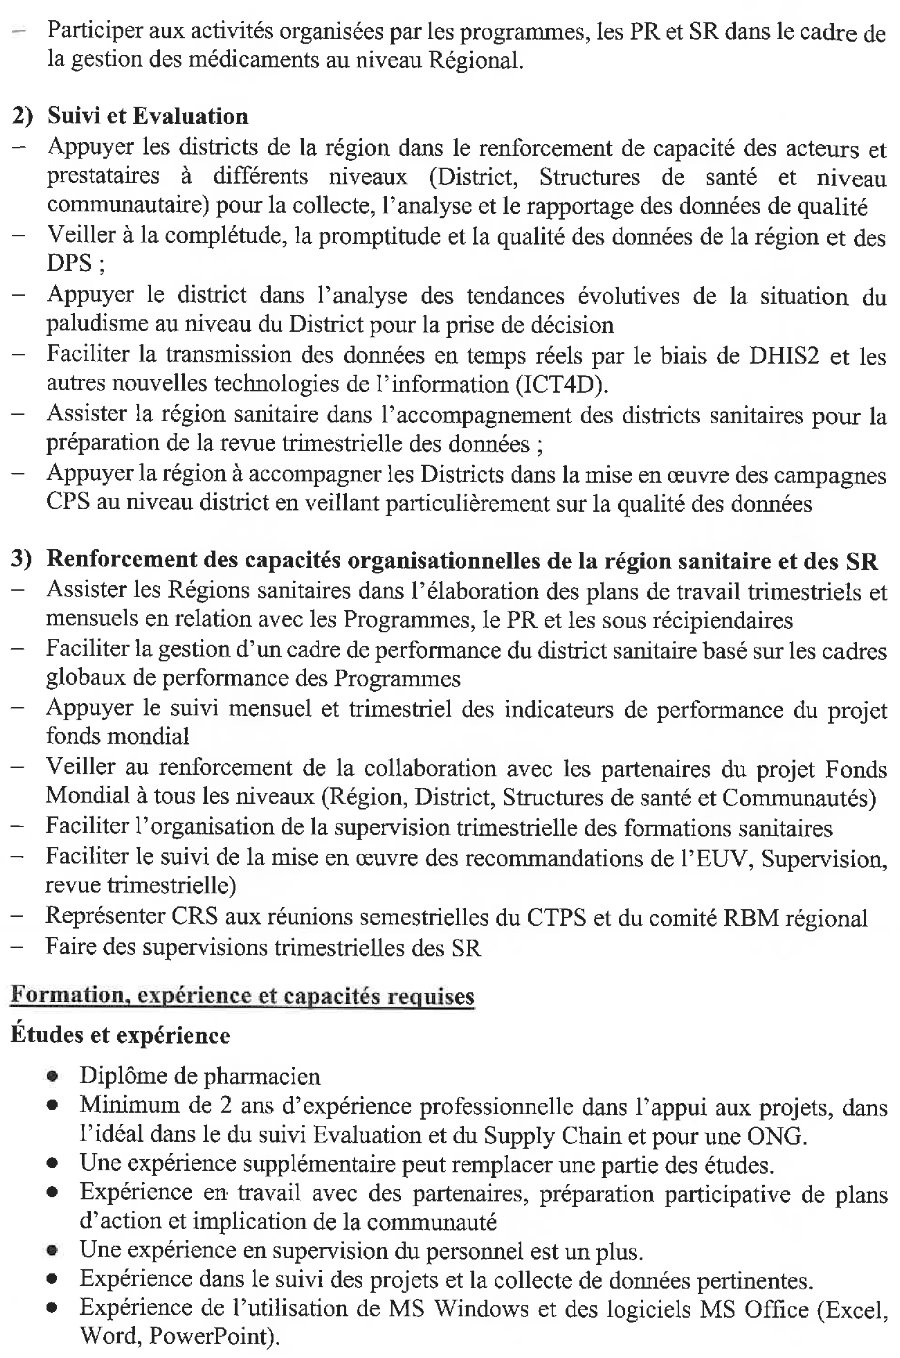 Offre d'emploi en guinée CRS guinée - p3